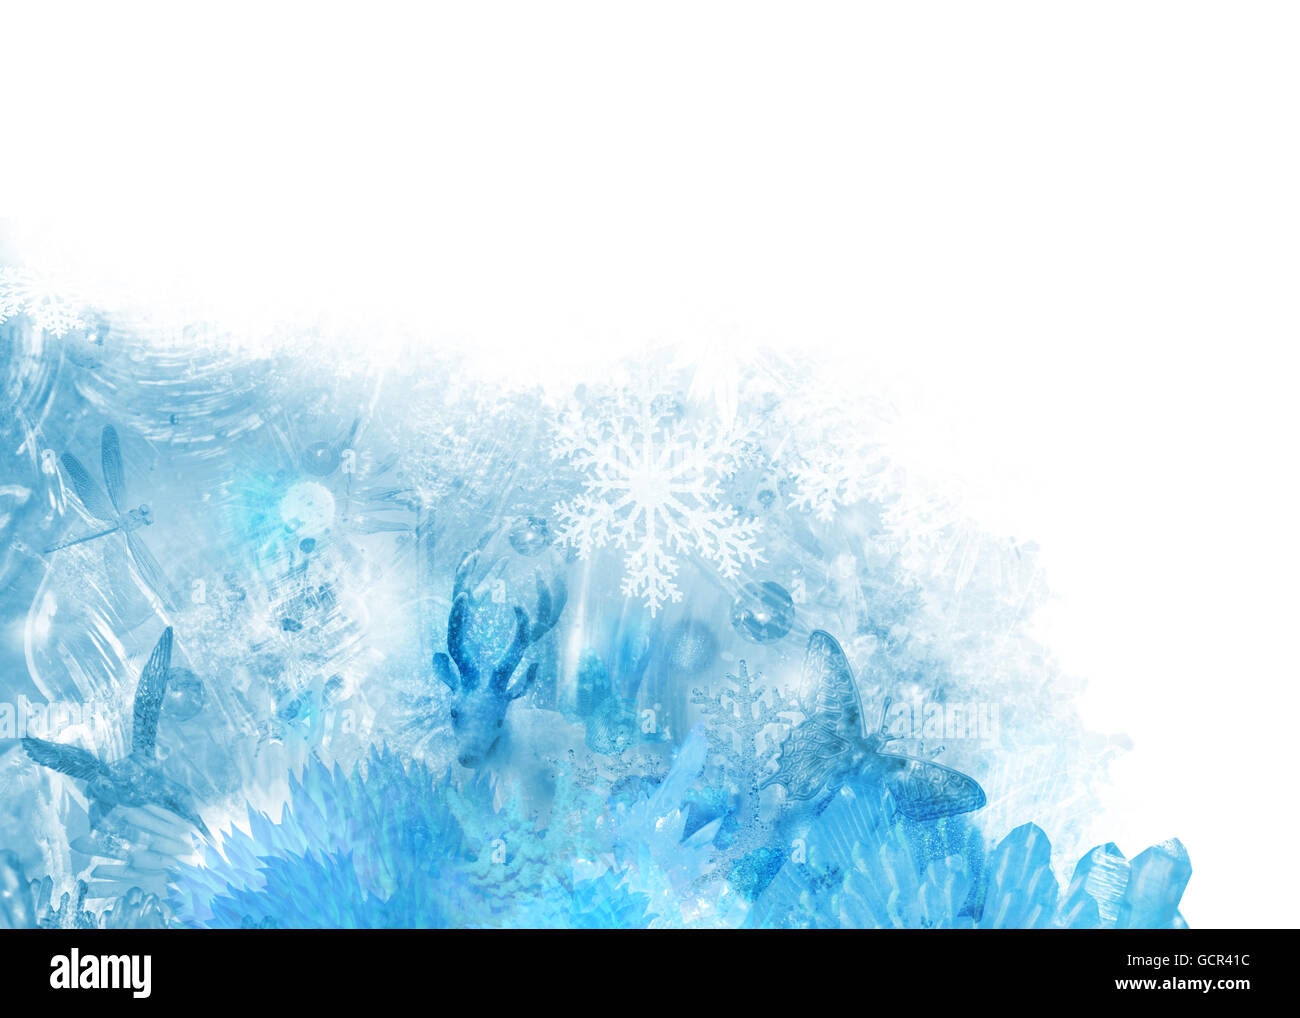 Eisige Winter-Szene verschiedener kristalline Elemente wie Eisblumen,  Schneeflocken, Eis Texturen und Glas Kristall Tiere Stockfotografie - Alamy